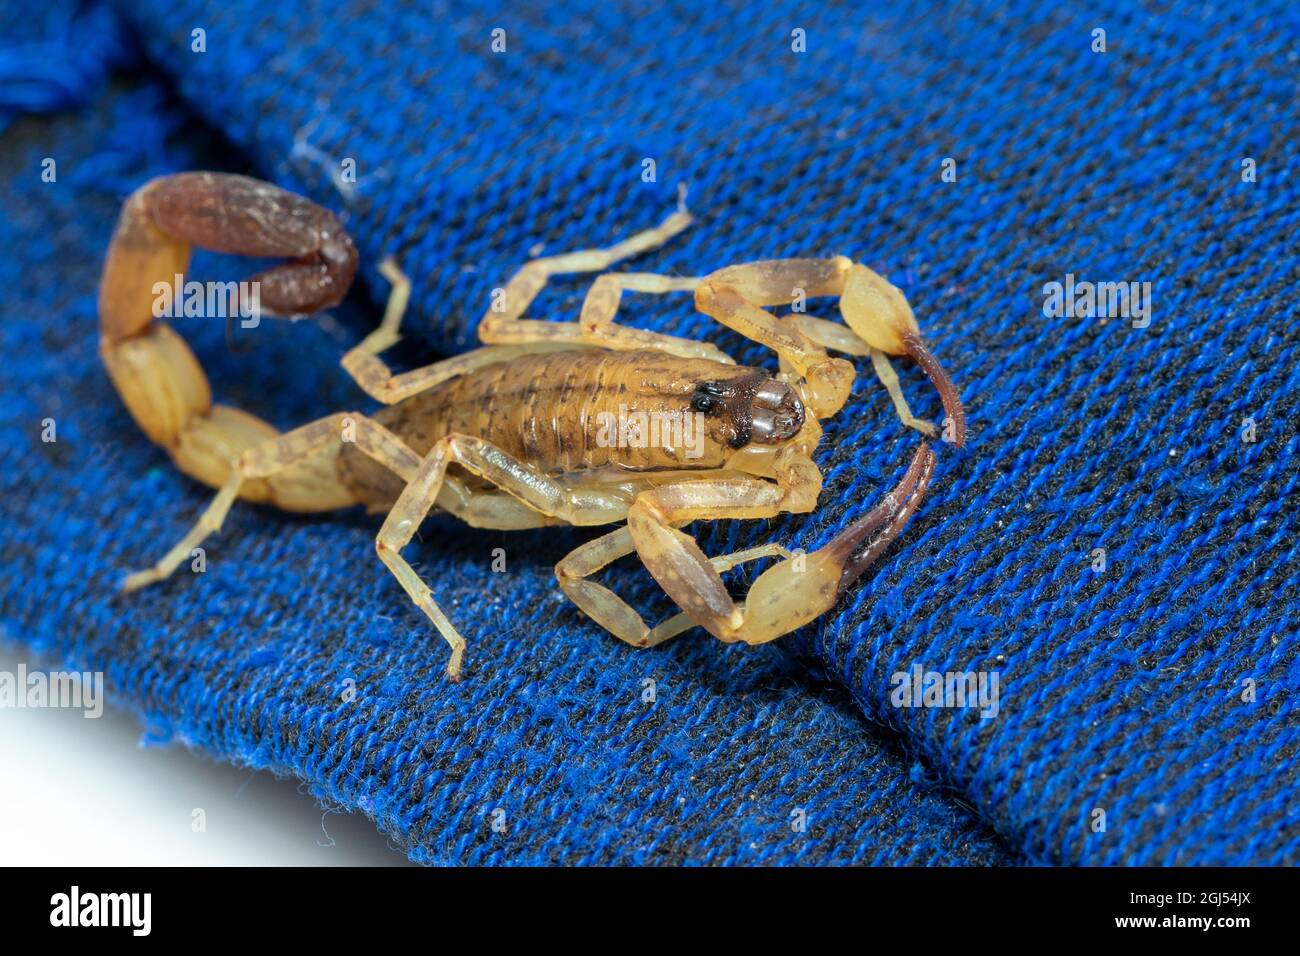 Bild eines braunen Skorpions auf blauem Tuch. Insekt. Tier. Stockfoto